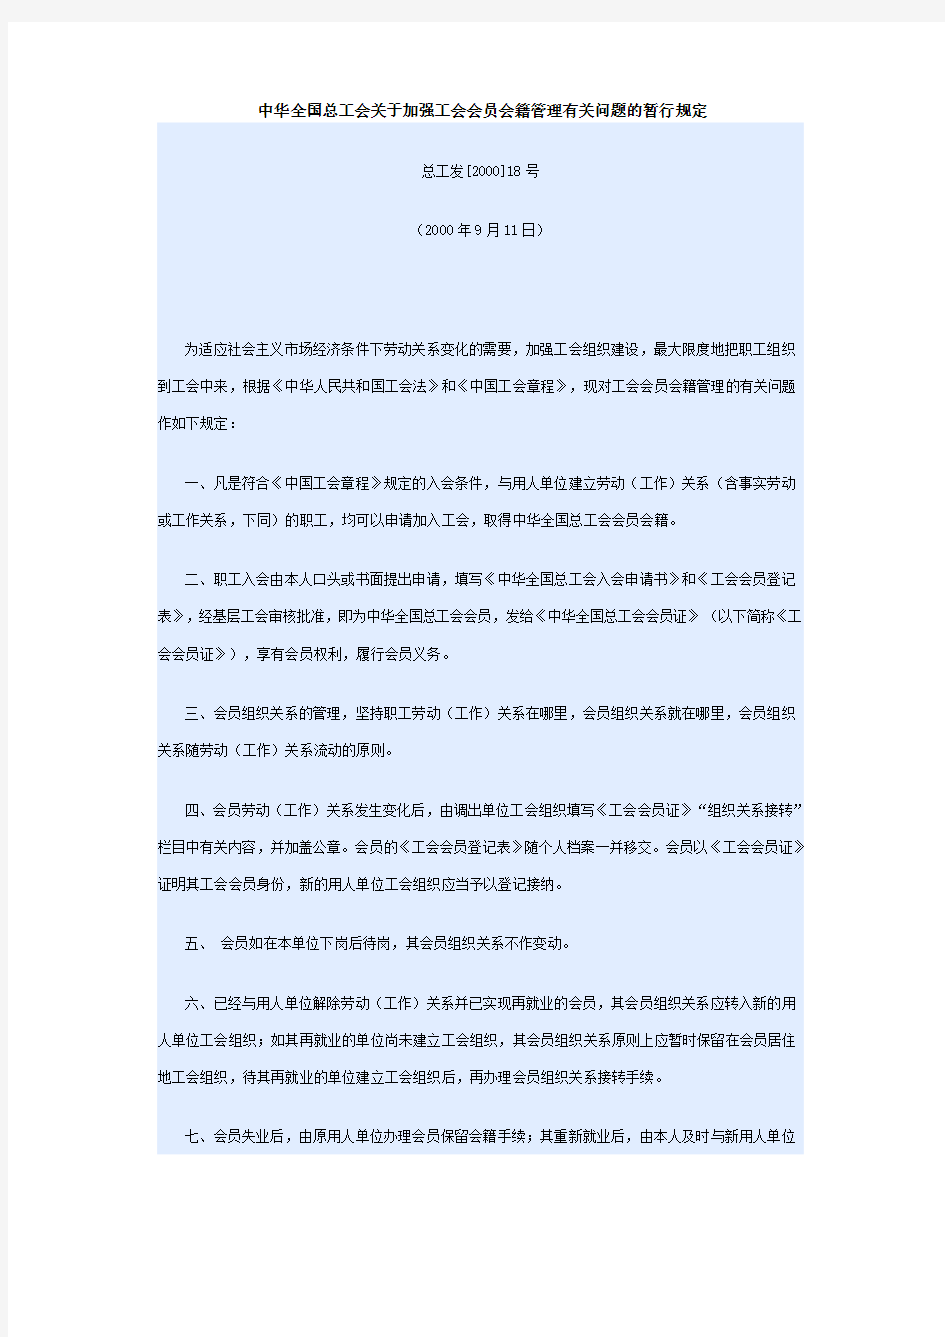 中华全国总工会关于加强工会会员会籍管理有关问题的暂行规定